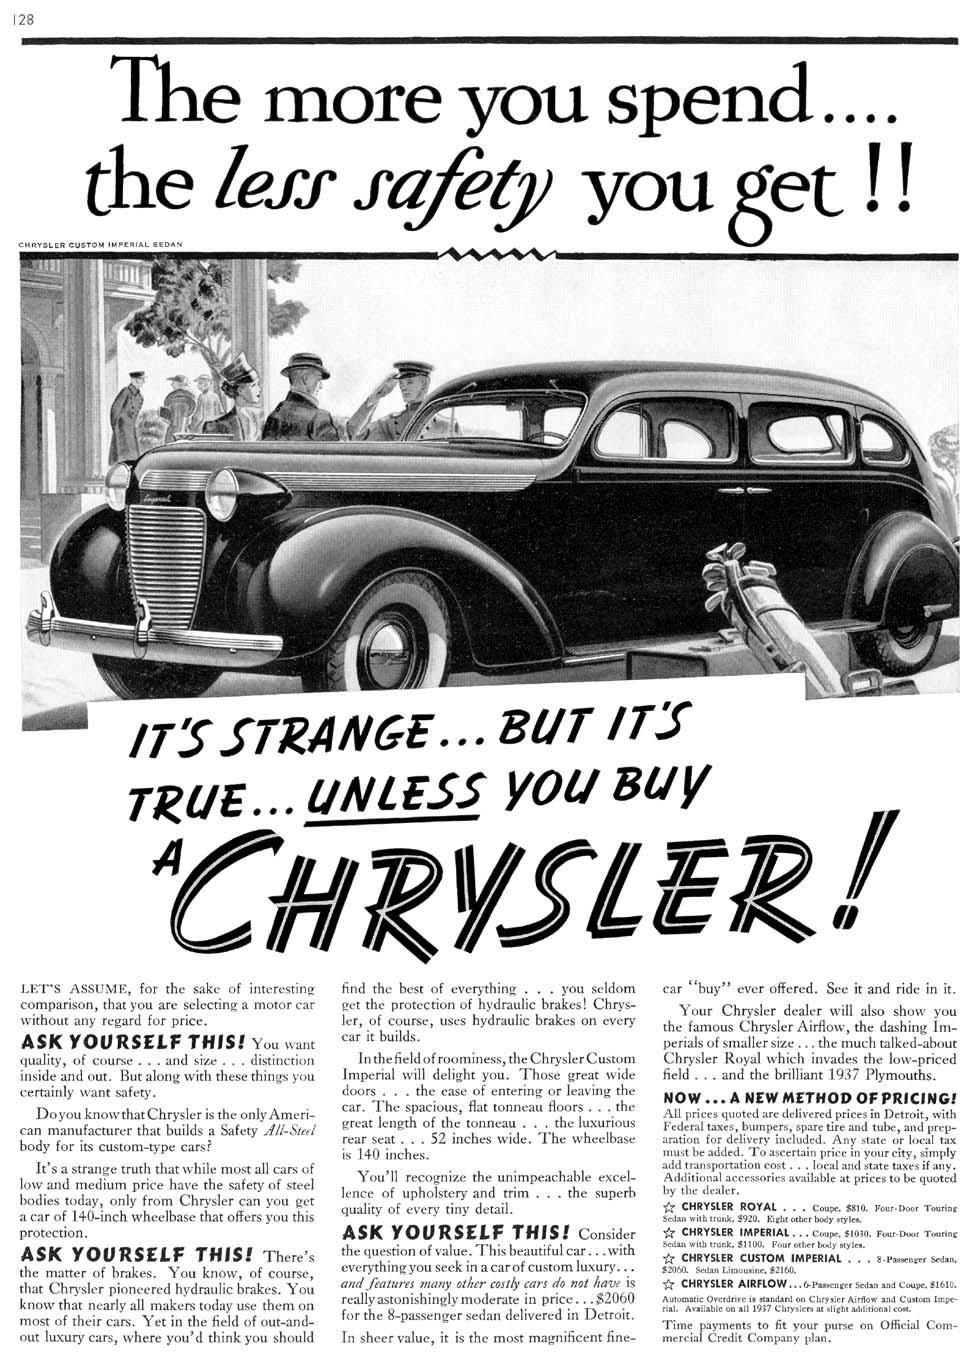 1937 Chrysler 9